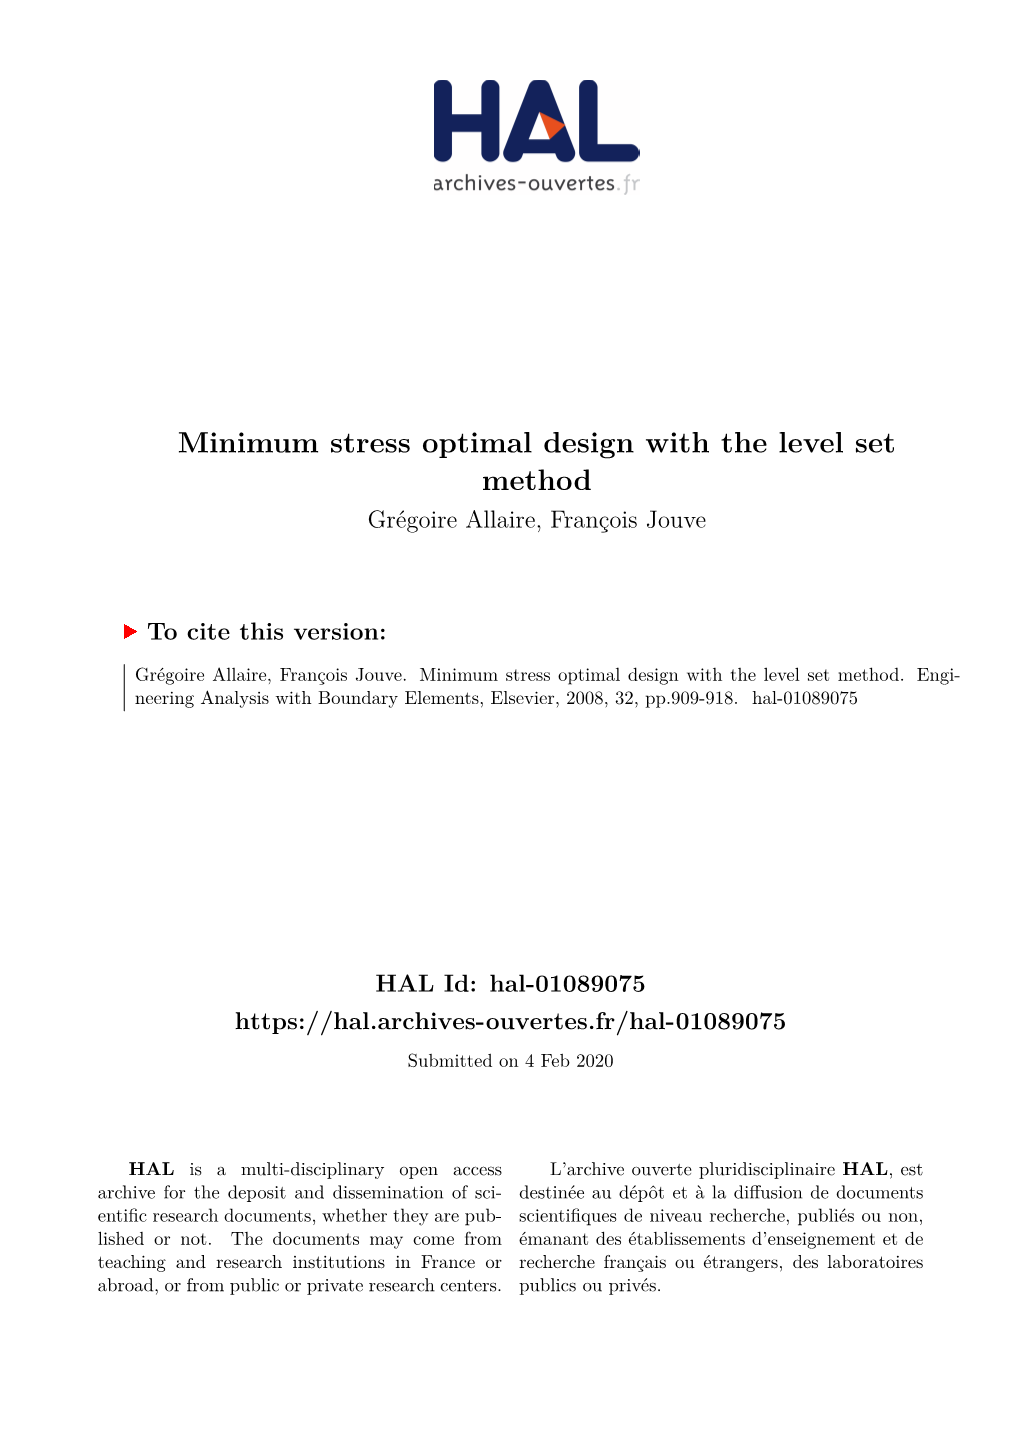 Minimum Stress Optimal Design with the Level Set Method Grégoire Allaire, François Jouve